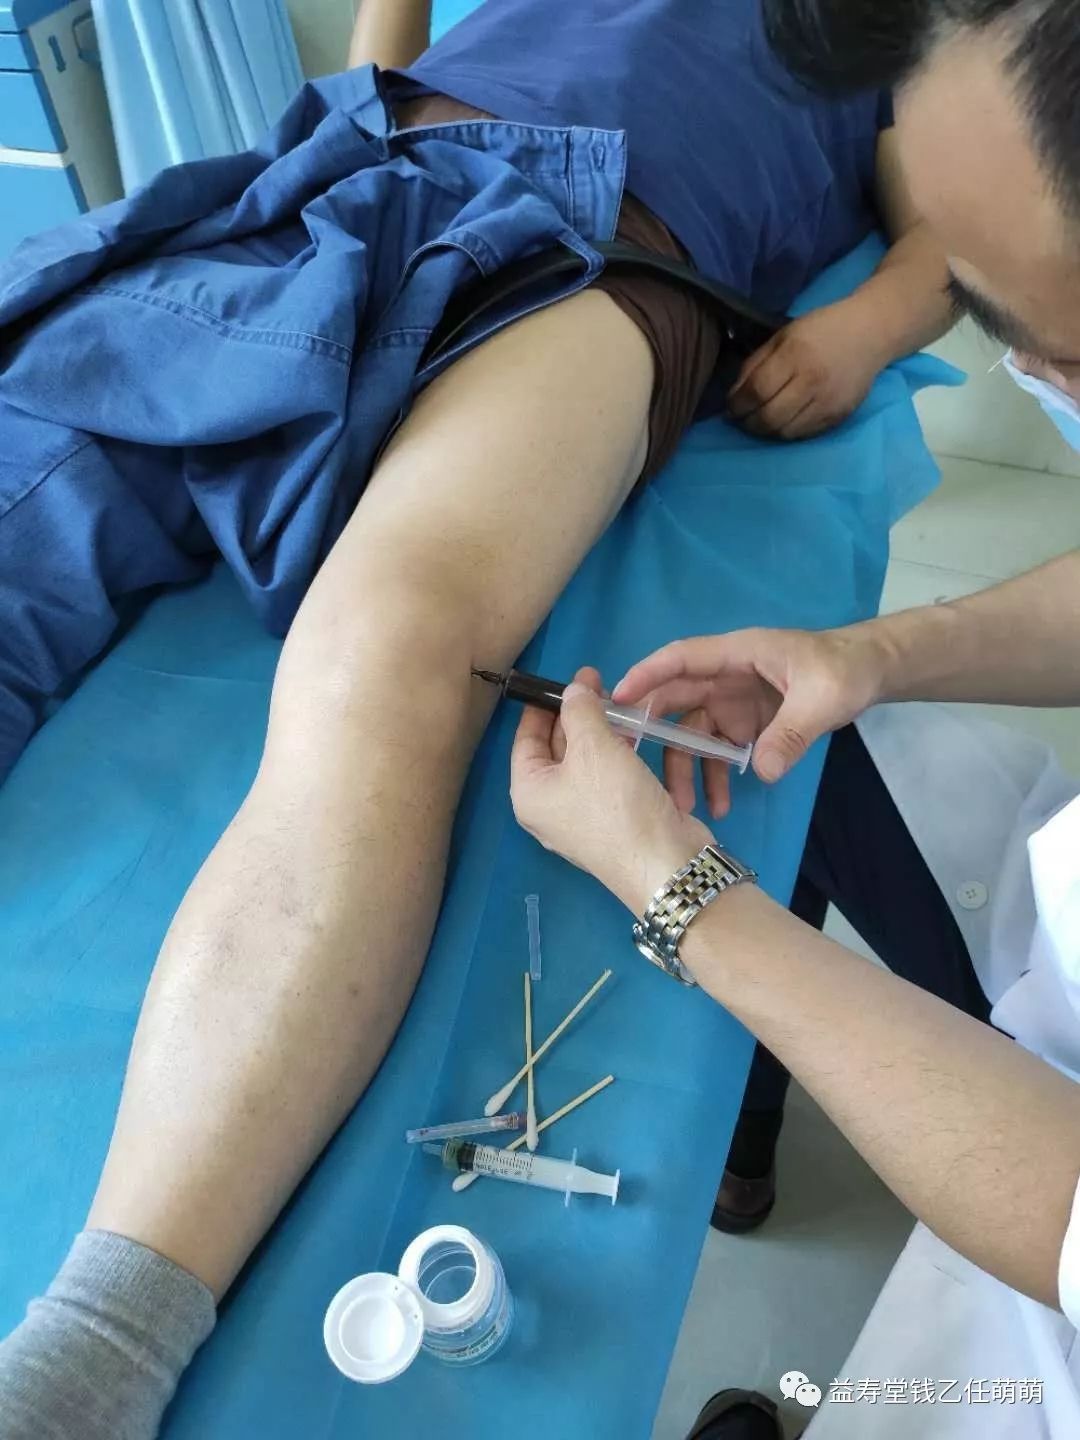 关节内富血小板血浆注射在踝关节骨性关节炎患者中的安全性和有效性